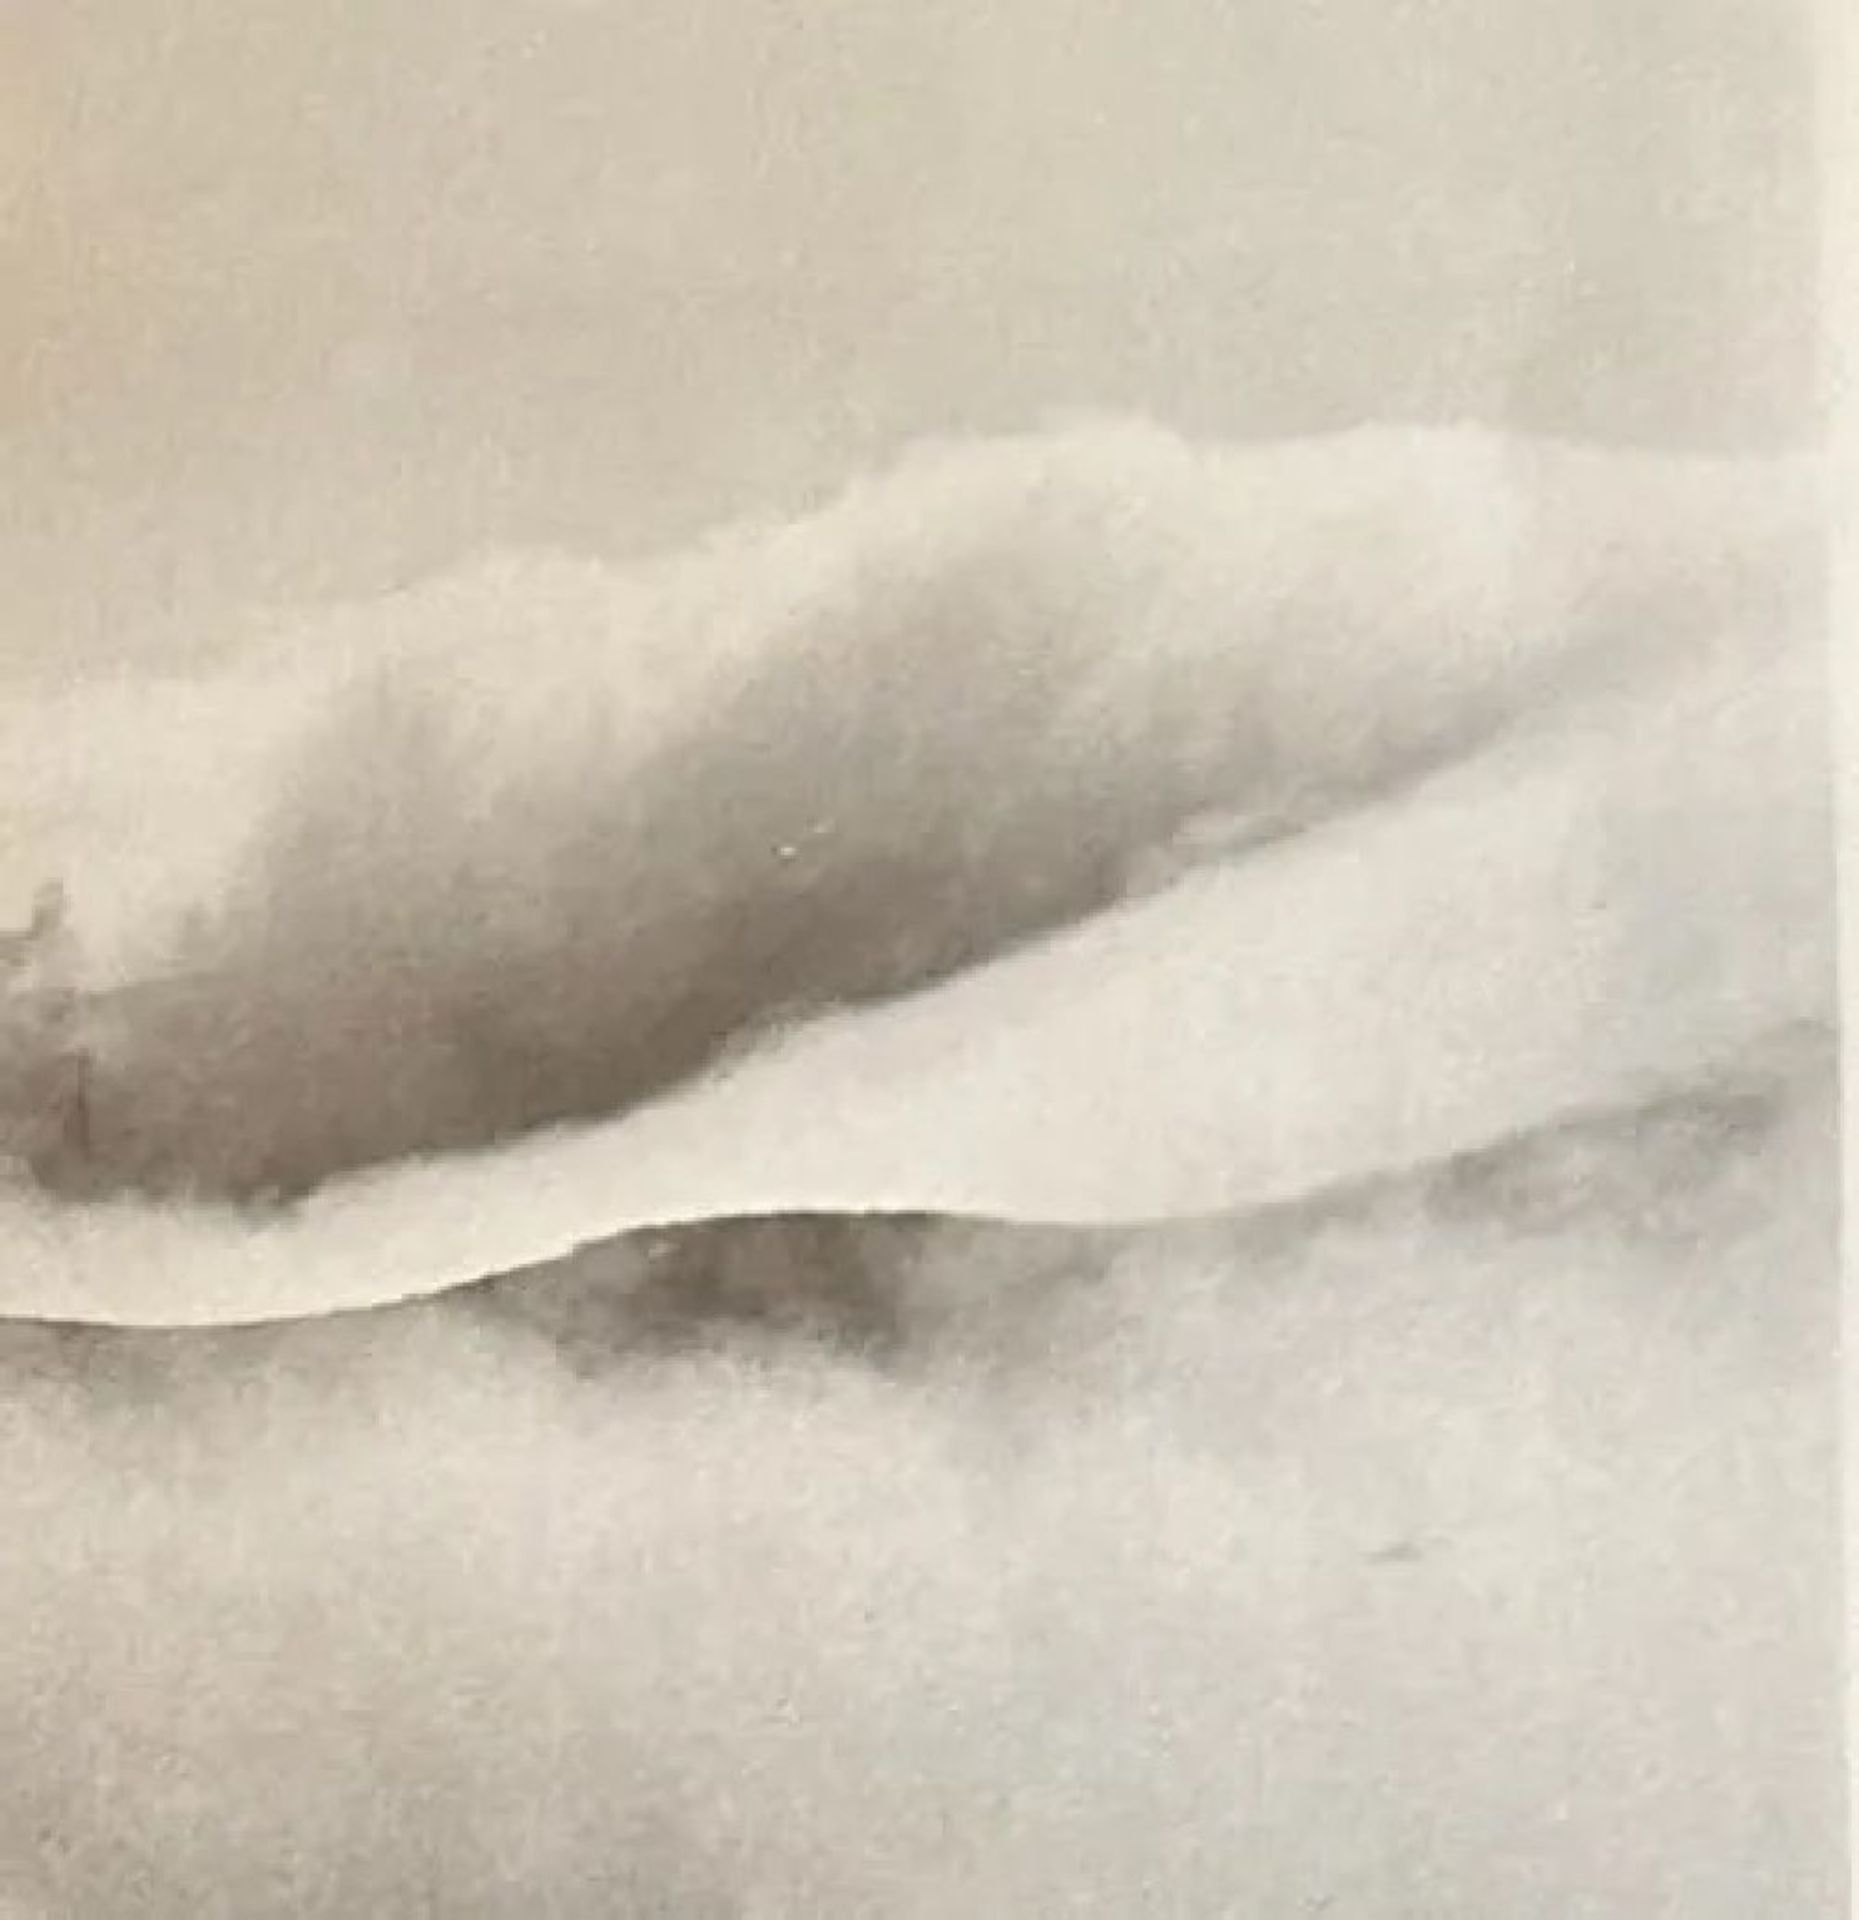 Edward Weston "Untitled" Print - Bild 4 aus 6